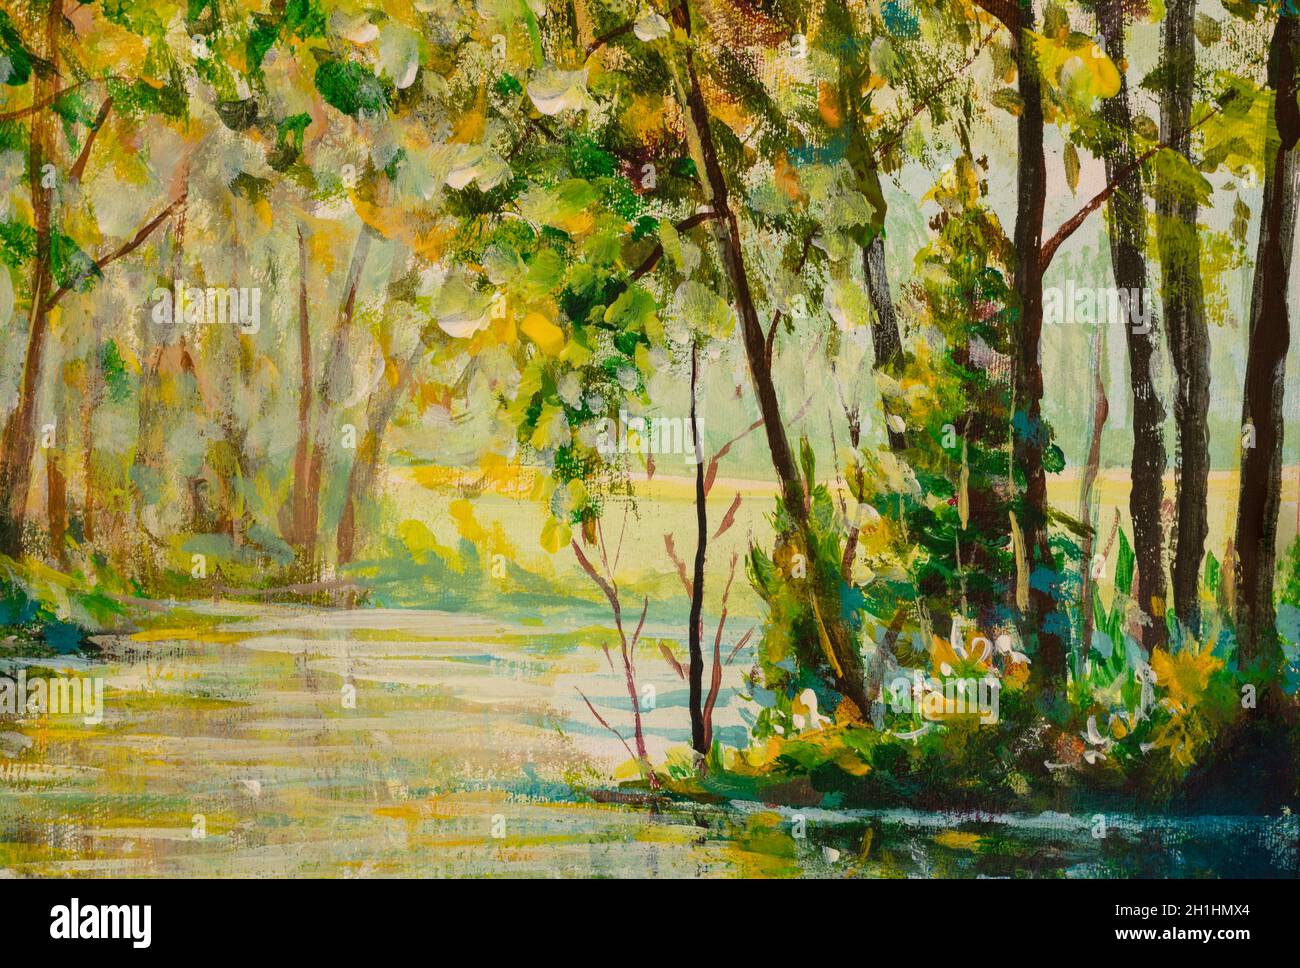 Rivière dans une forêt d'automne ensoleillée.Illustration créée avec aquarelles, peinture à l'huile Banque D'Images